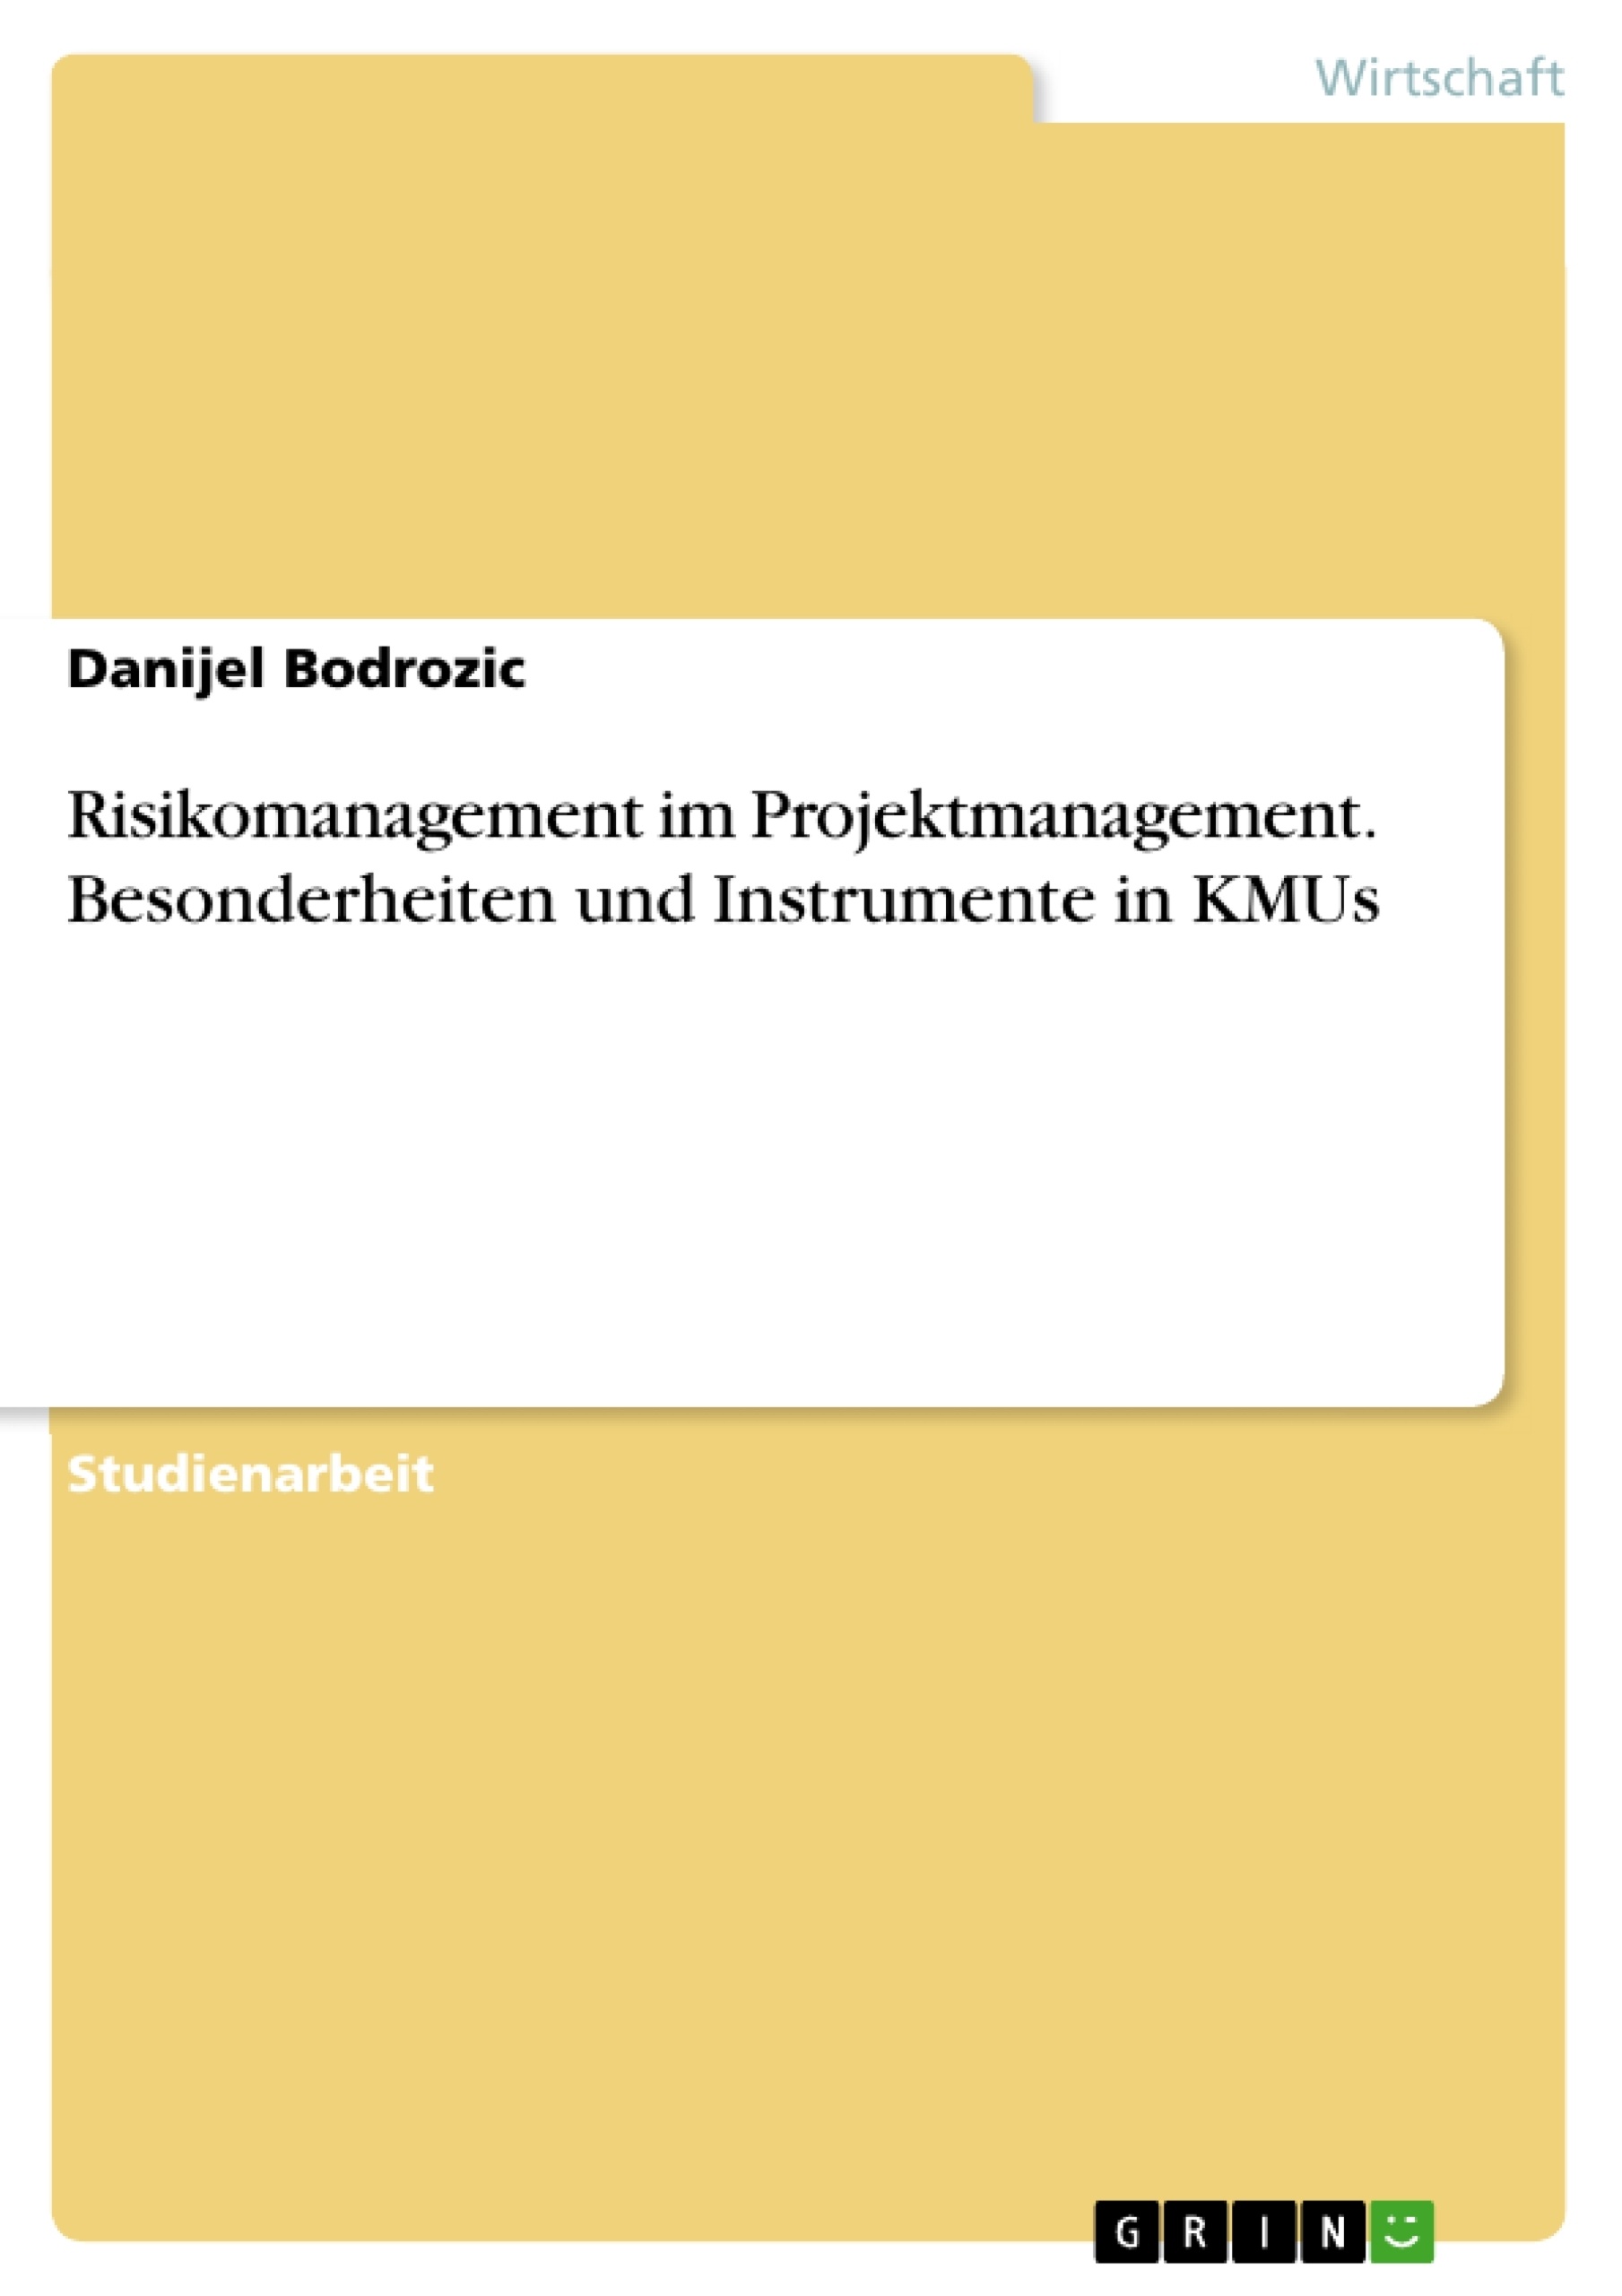 Título: Risikomanagement im Projektmanagement. Besonderheiten und Instrumente in KMUs